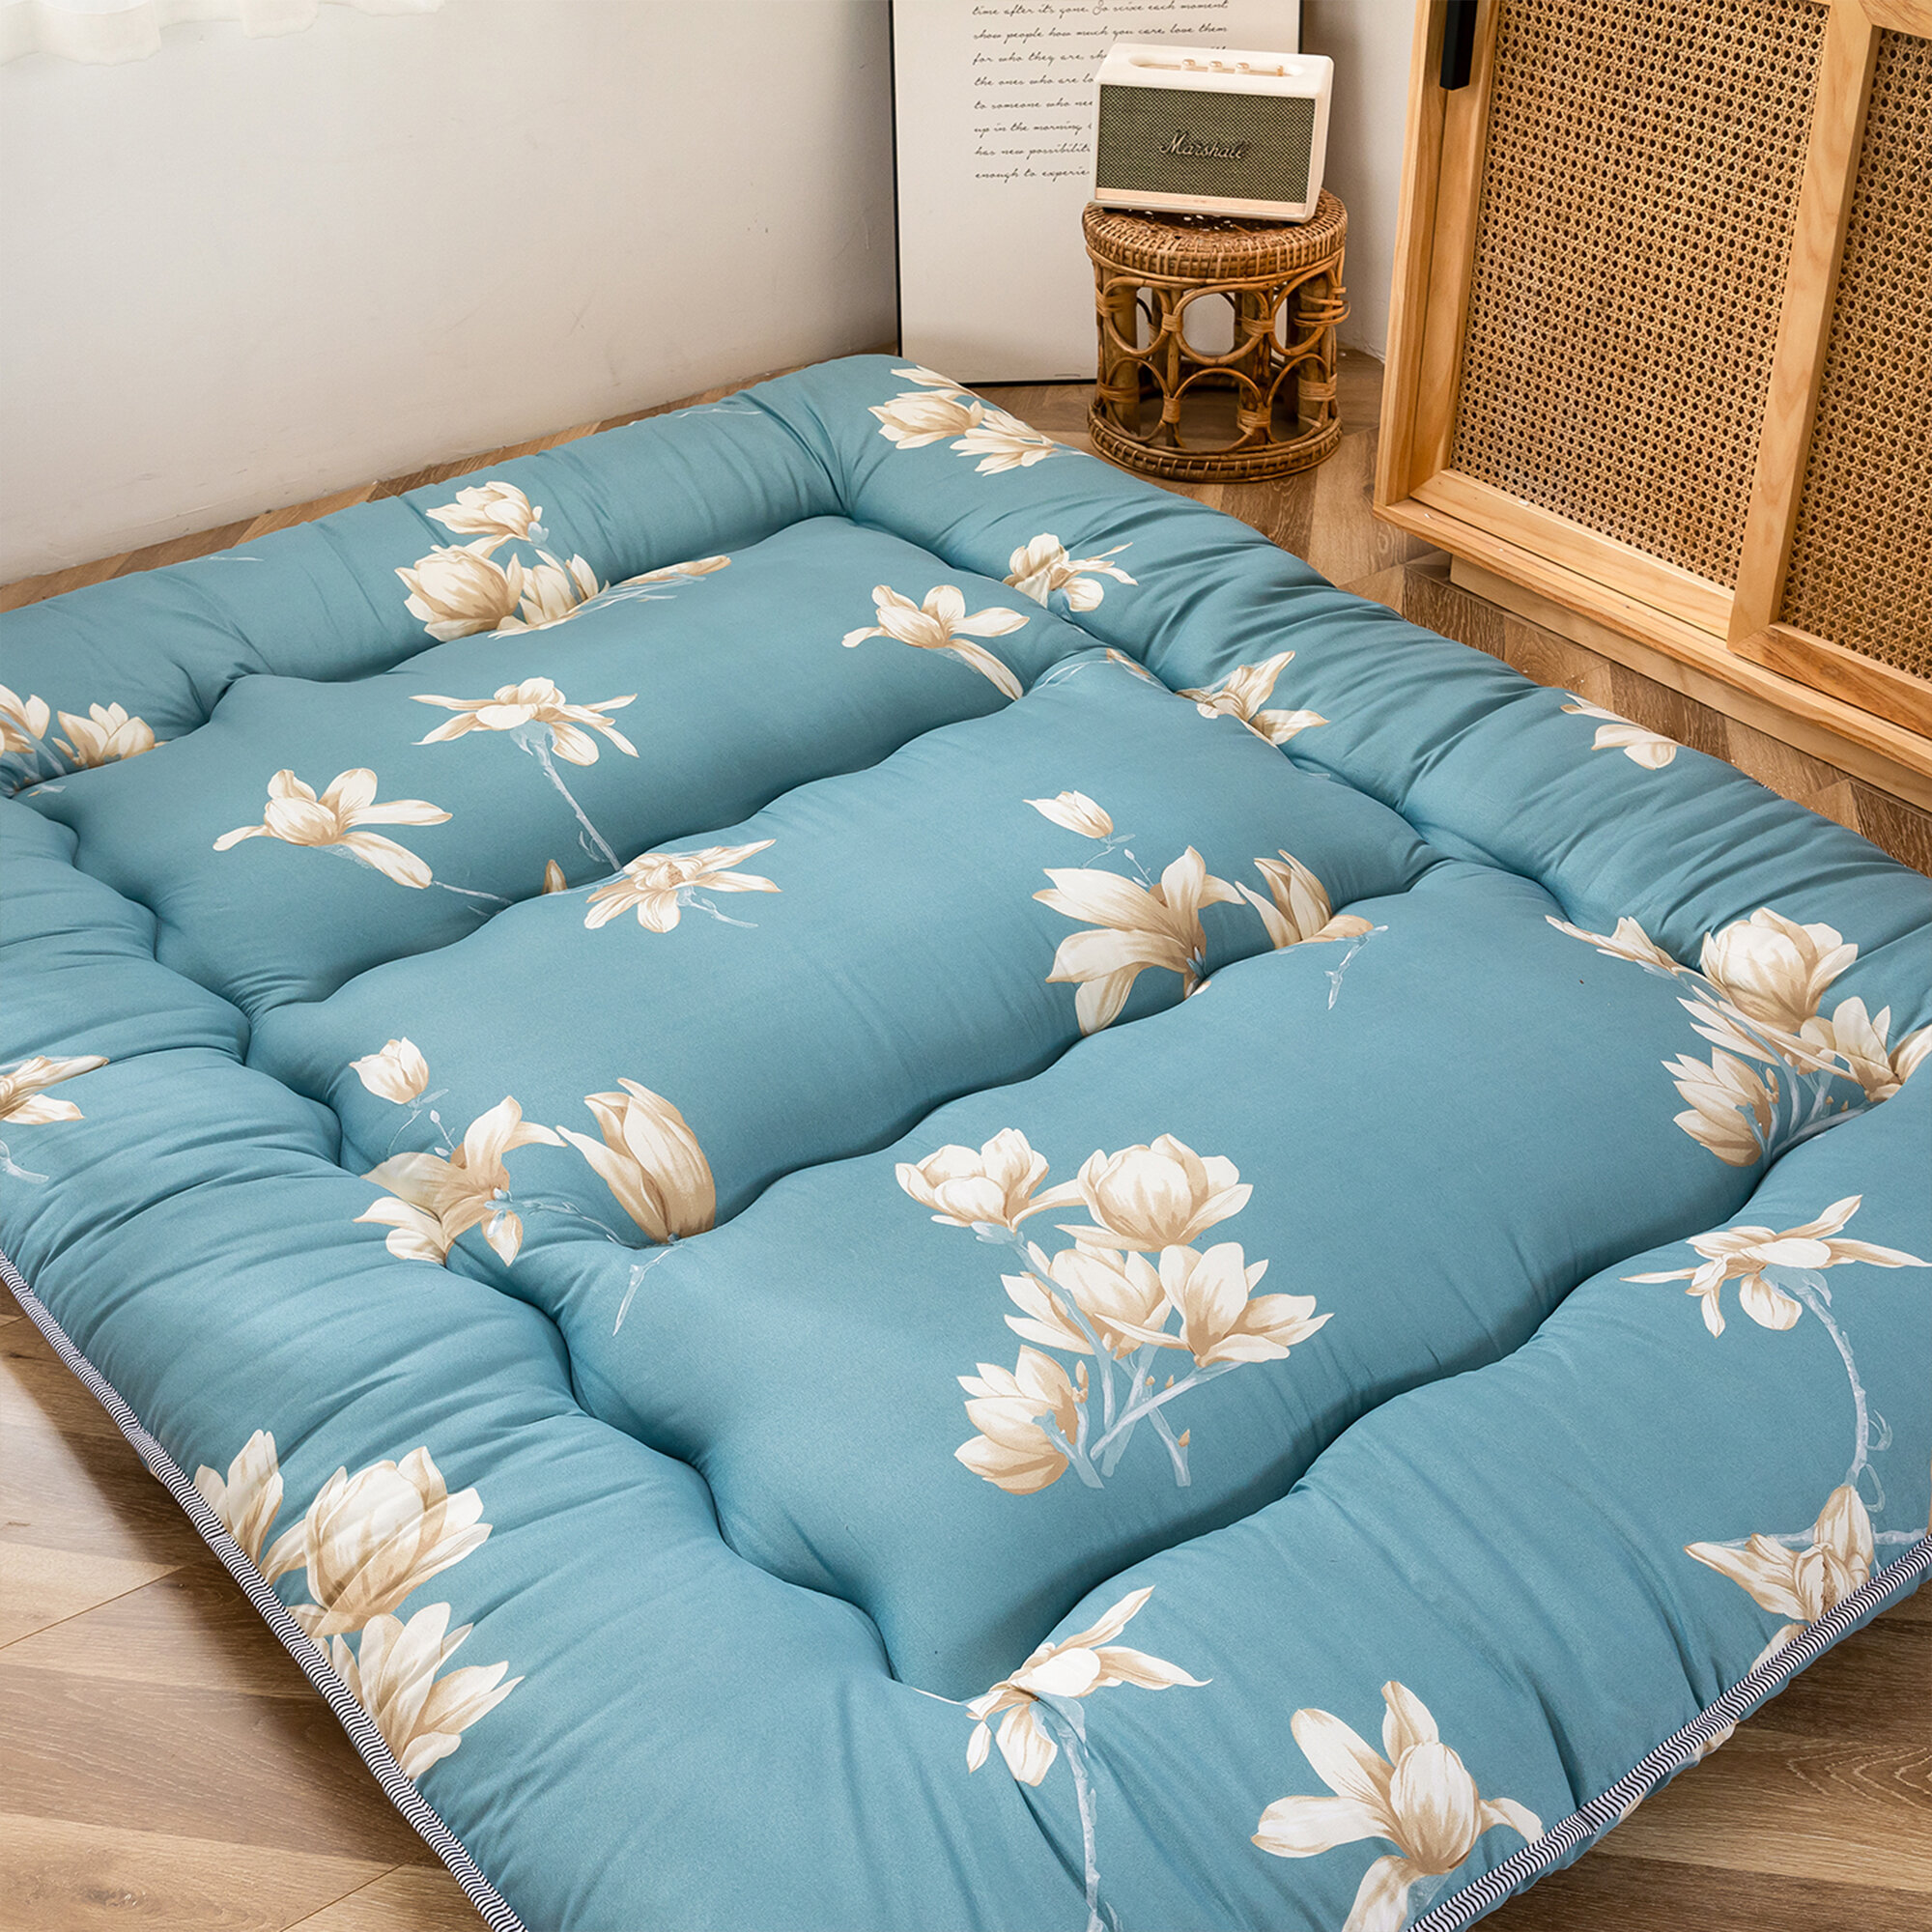 https://assets.wfcdn.com/im/30507689/compr-r85/1529/152930672/4-memory-foam-japanese-futon-mattress-futon-mattress.jpg